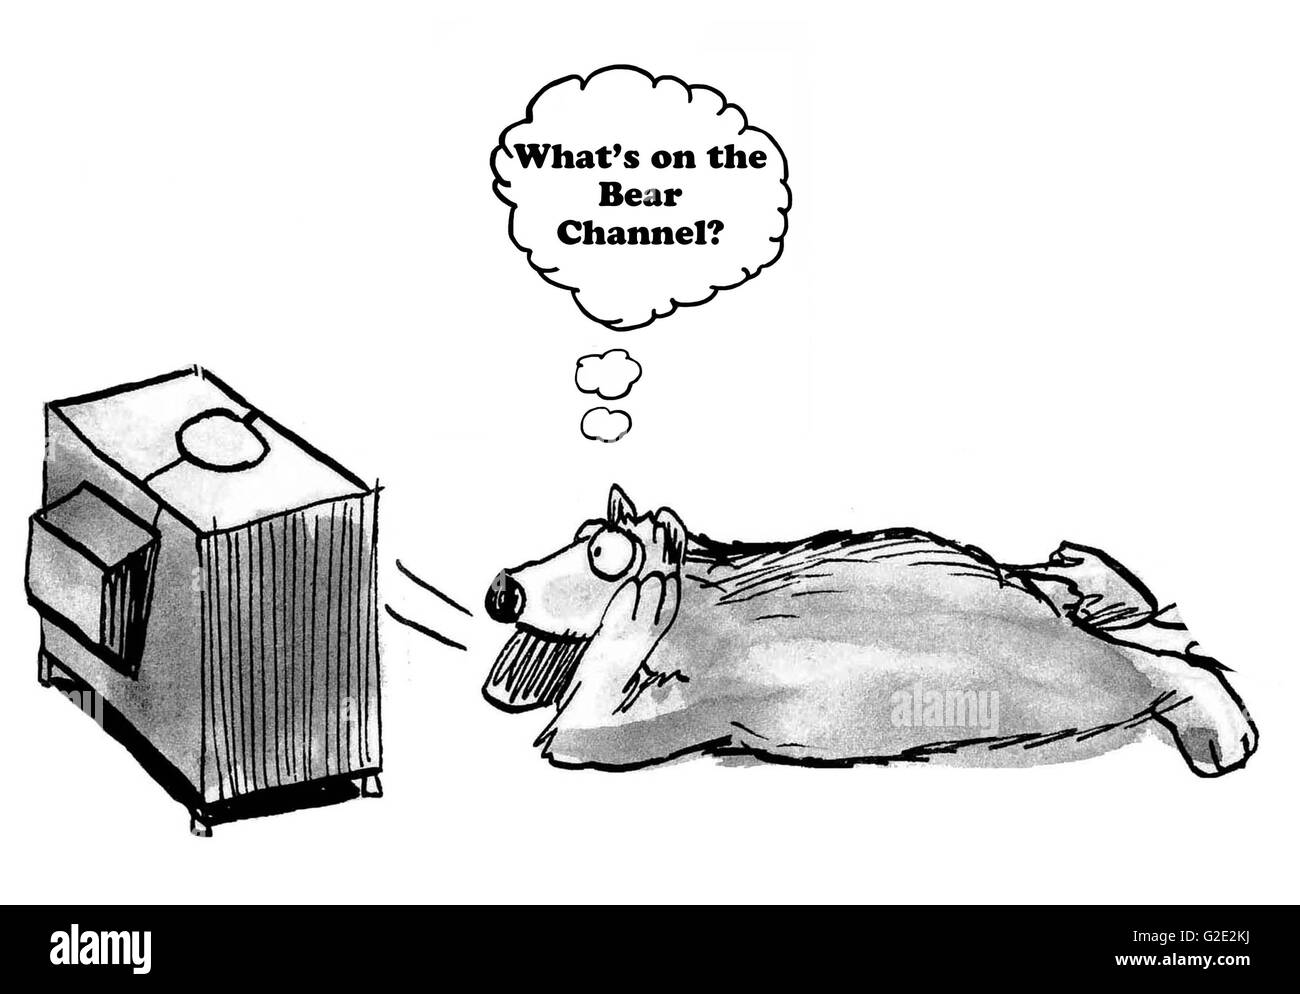 Caricature sur la connexion par câble ayant un canal pour tous les intérêts, y compris les ours. Banque D'Images